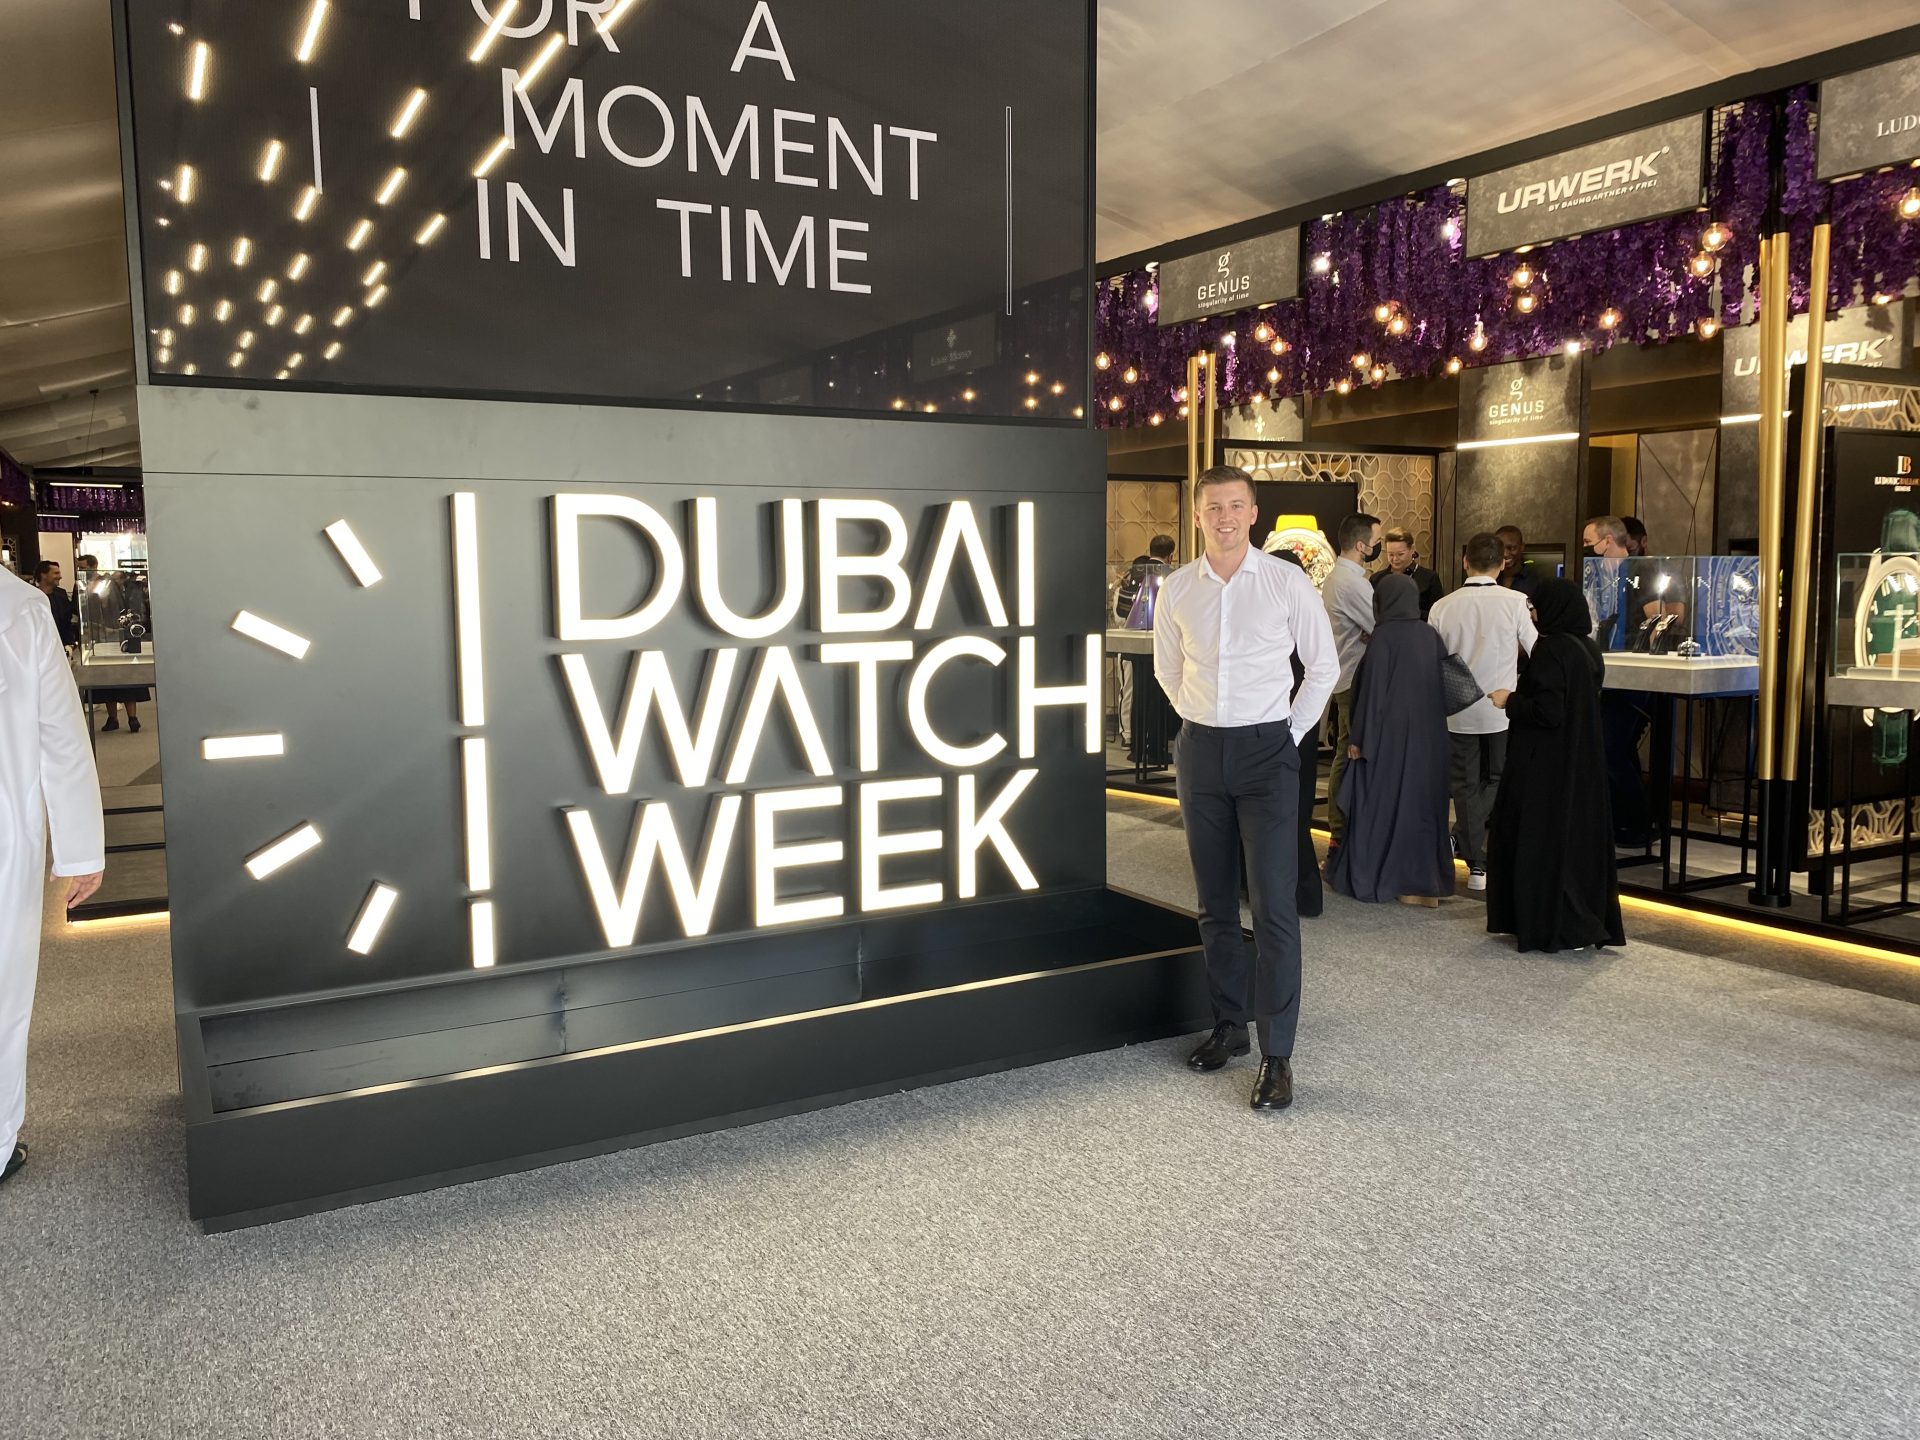 Dubai watch week 77ba0a23 7252 4aa1 abde 080d02207b15